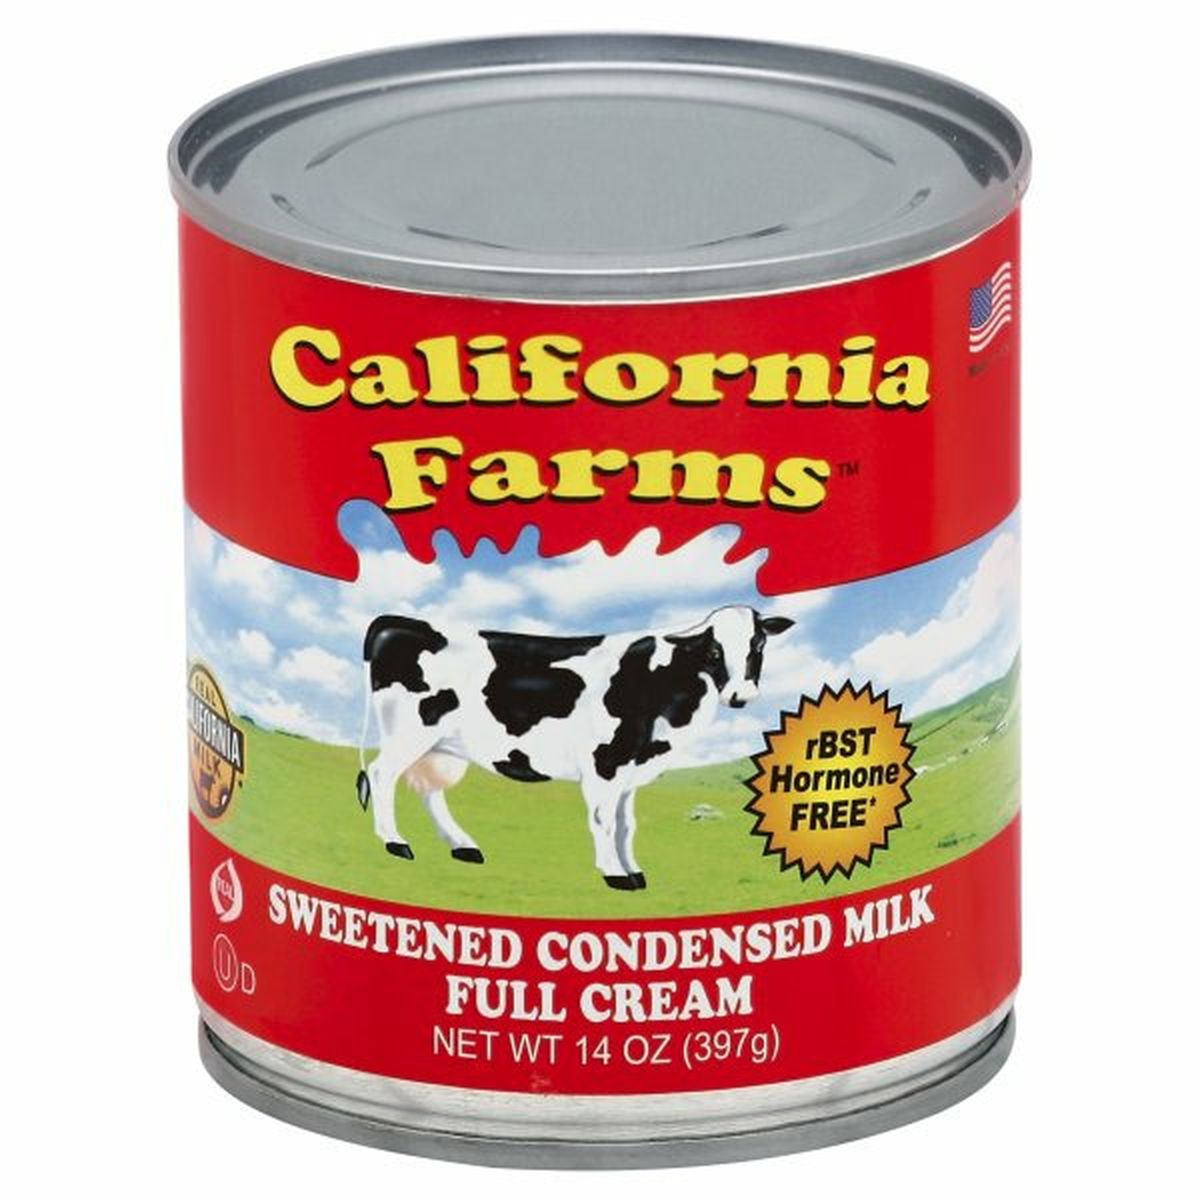 Calories in California Farms Condensed Milk, Sweetened, Full Cream